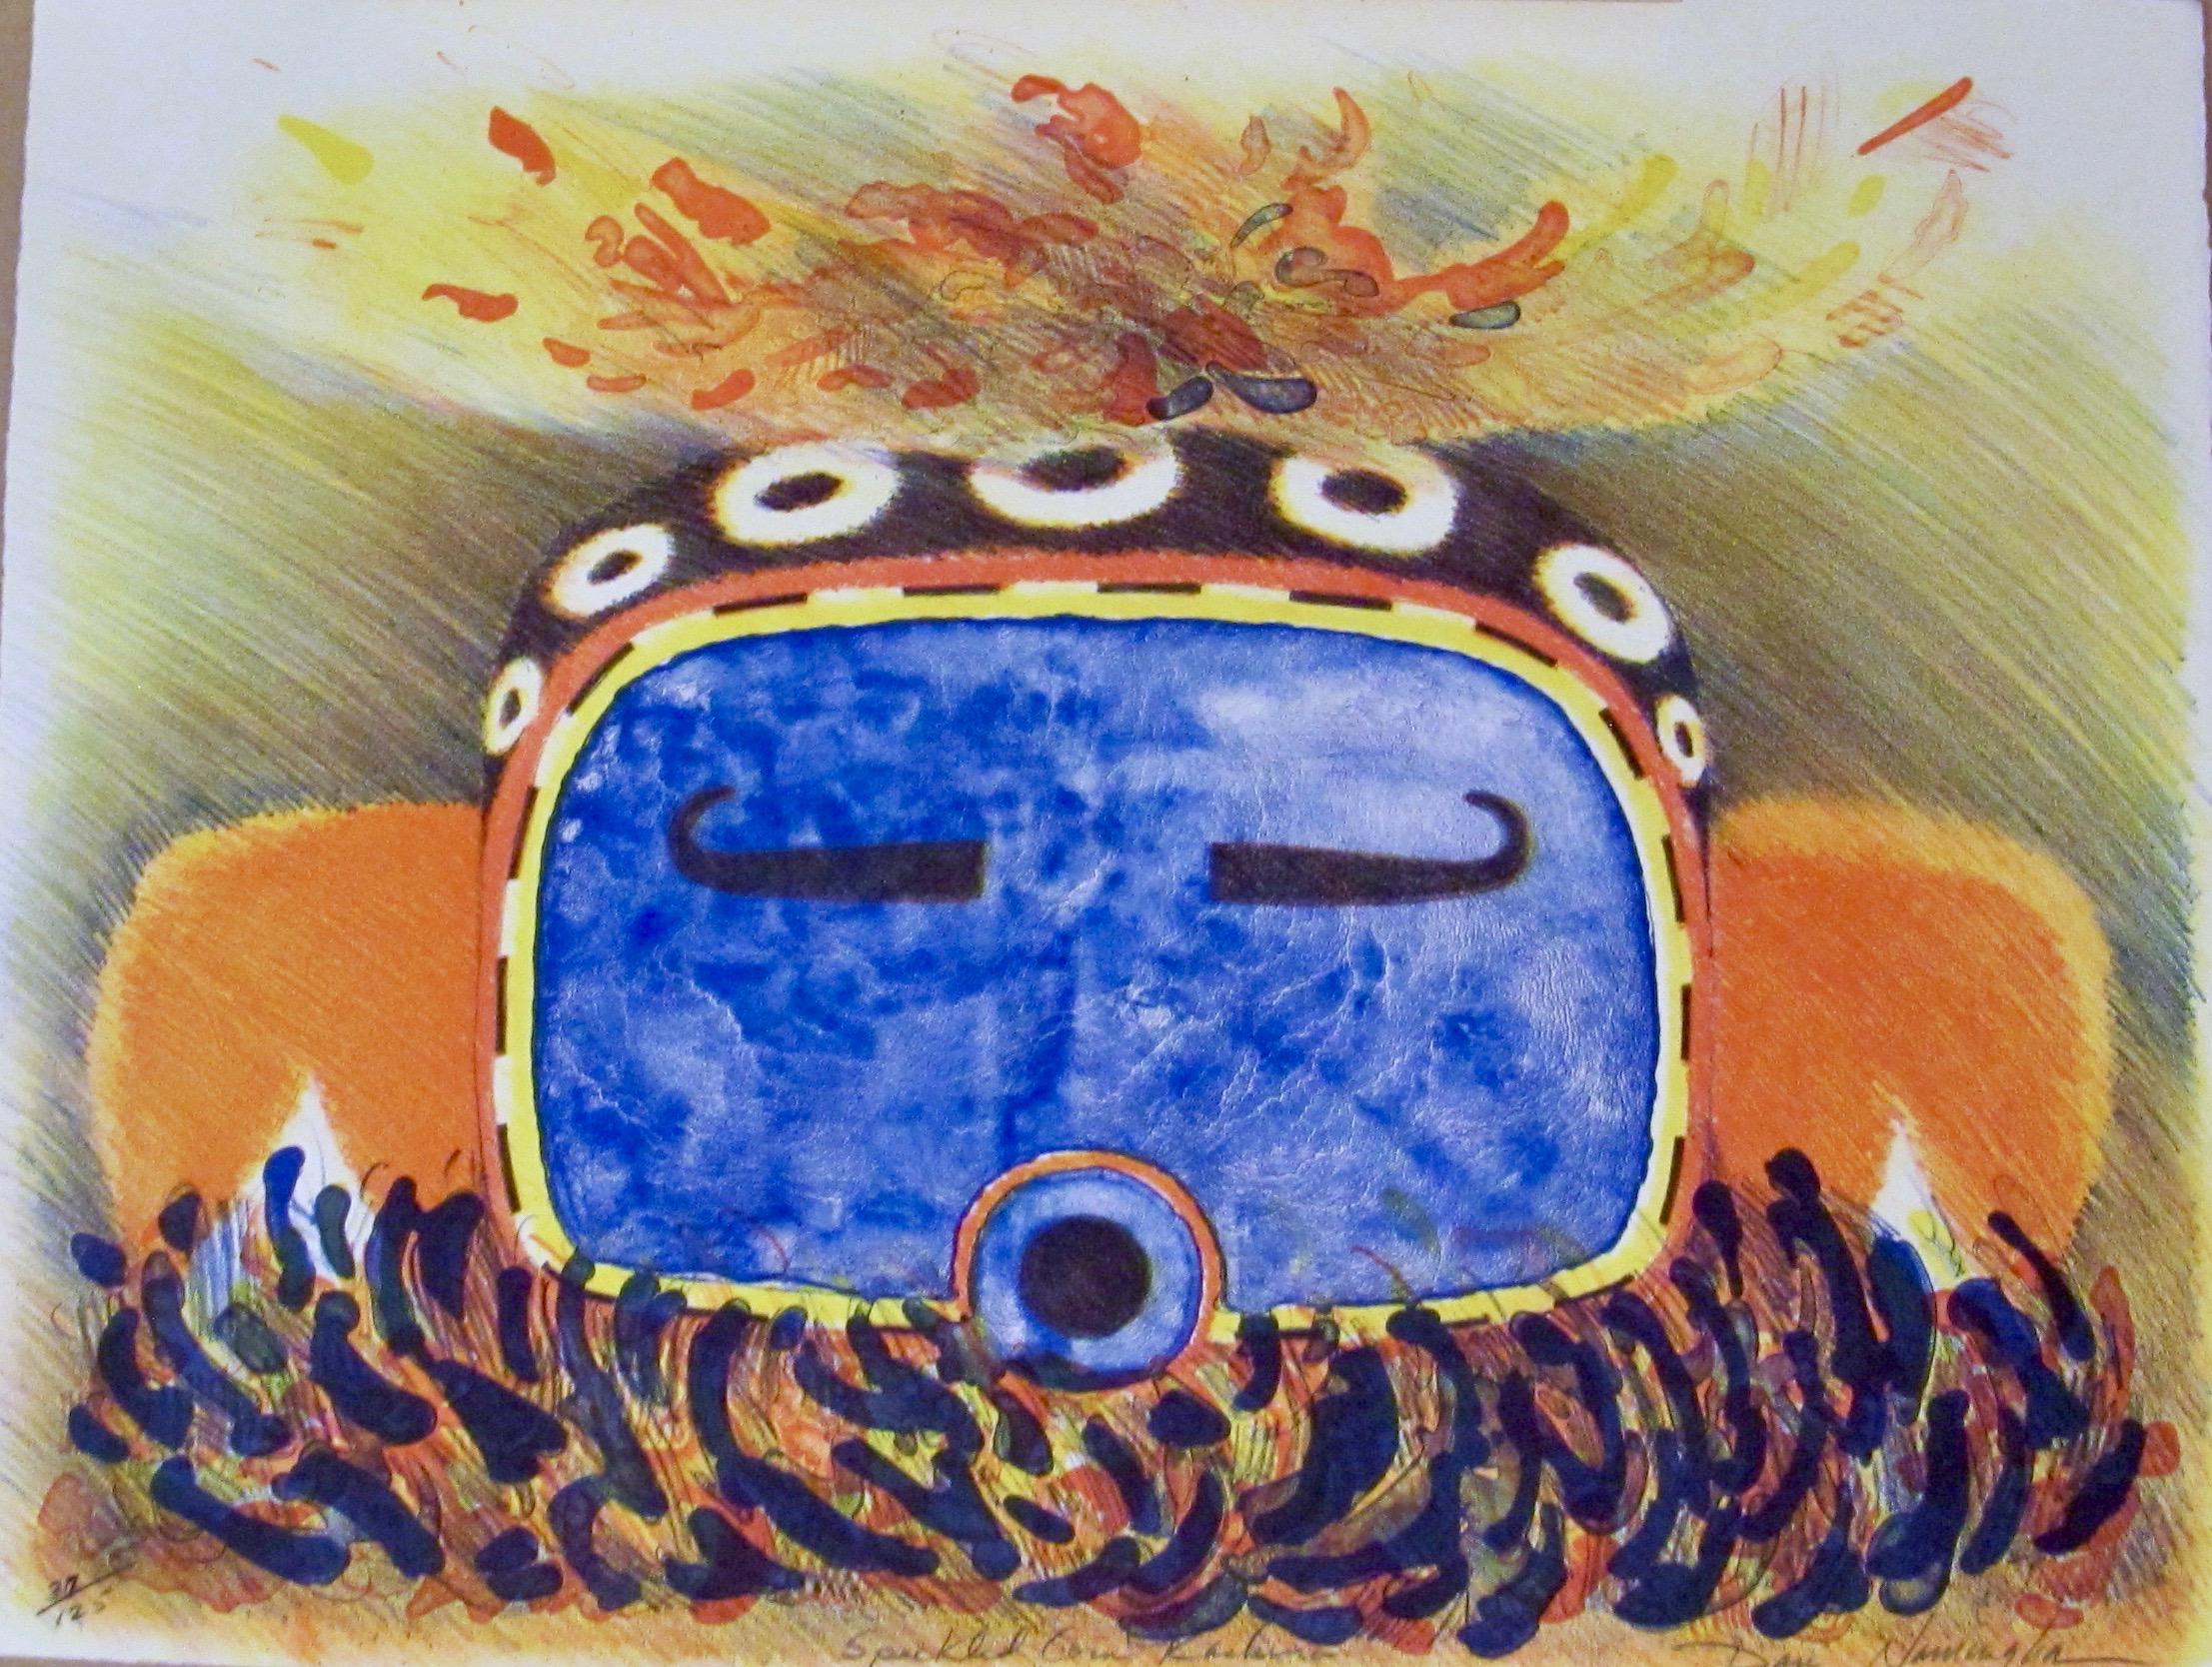 Speckled Corn Kachina, Dan Namingha, lithographie, Hopi, kachina, bleu, orange 

lithographie en édition limitée tirée à la main
signé et numéro numéro numéro signé par l'artiste

Glenn Green Galleries présente également des peintures, des gravures